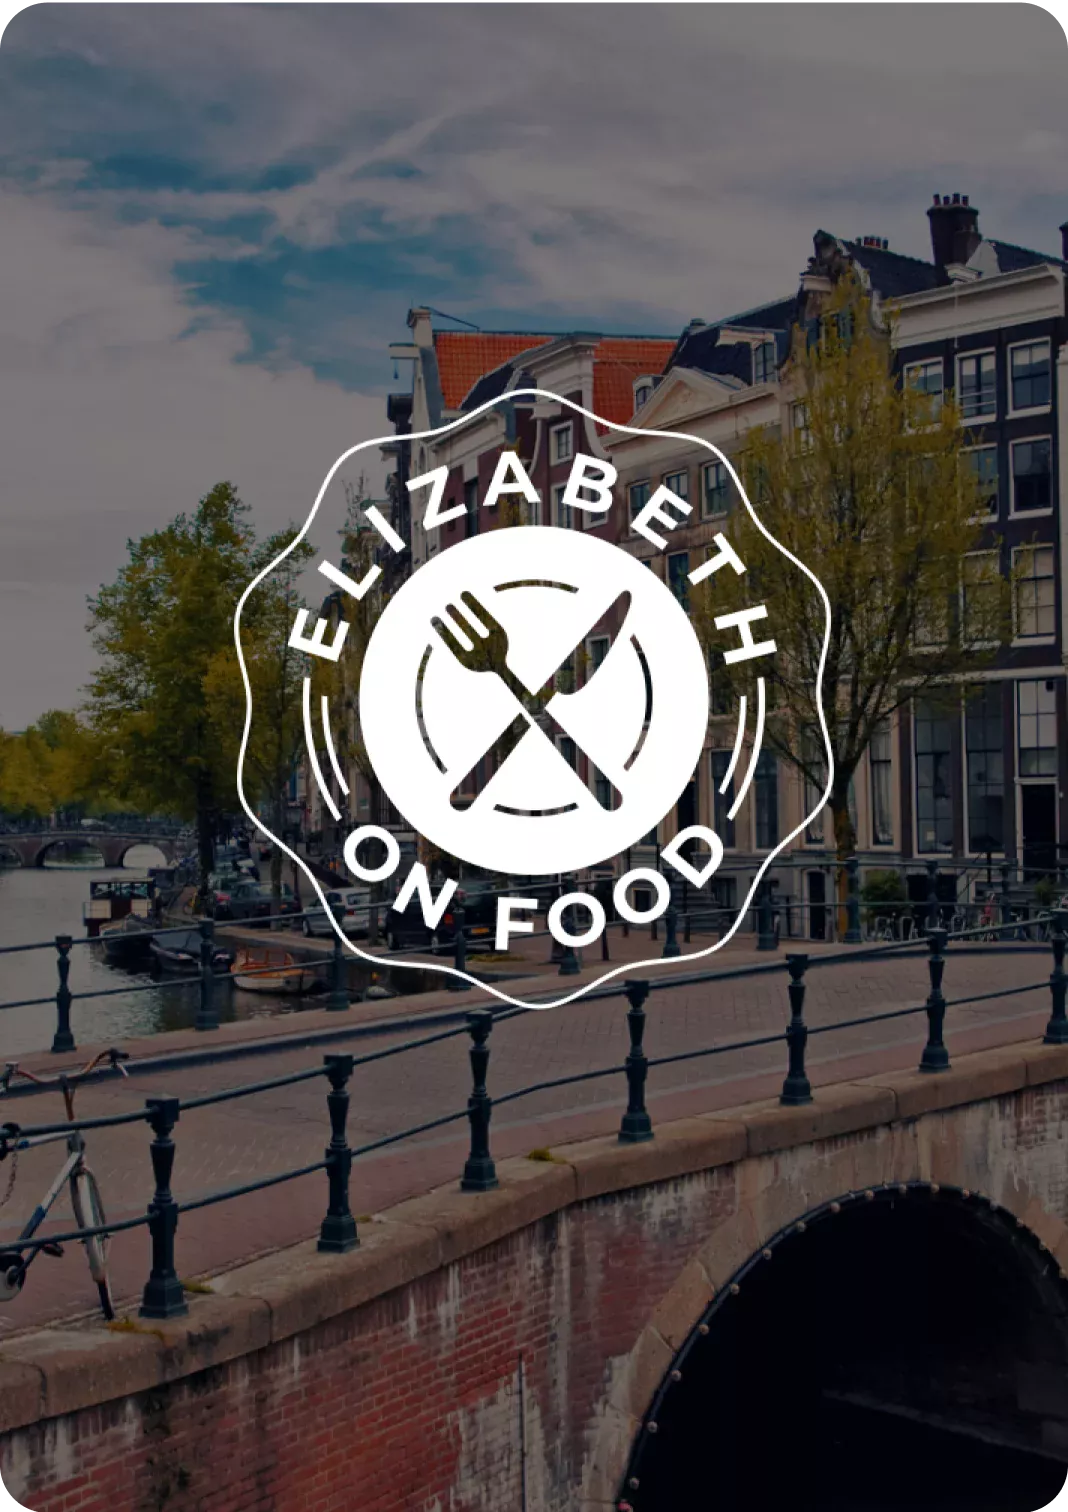 Elizabeth on Food: een luxe high-end app voor de beste restaurants in Amsterdam - DTT apps